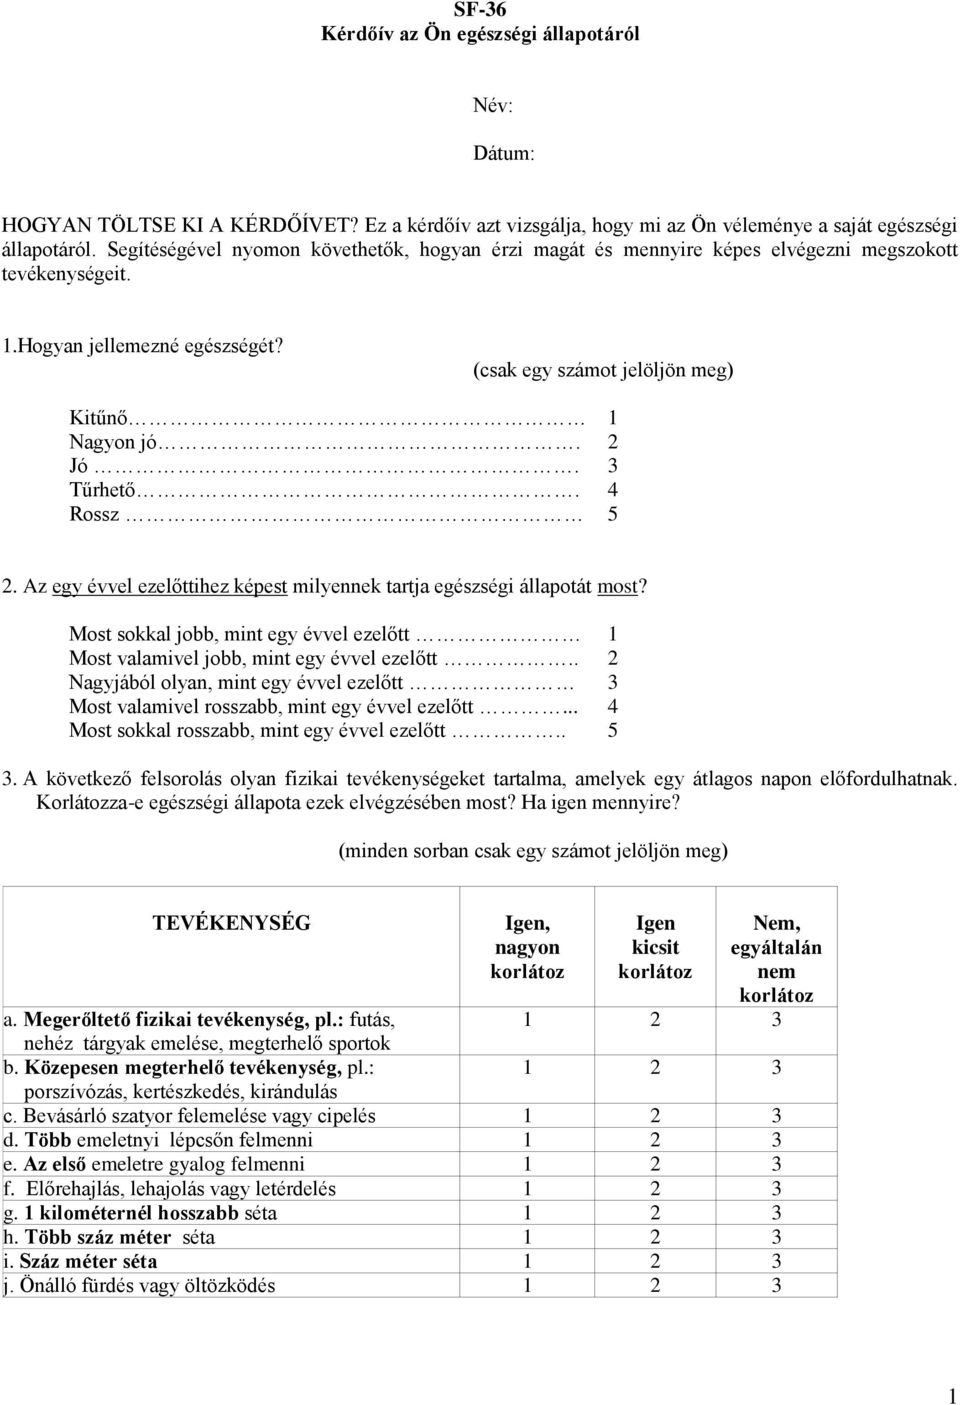 A fogyás motivációi súlycsökkentő kezelésben részt vevők körében - PDF Ingyenes letöltés